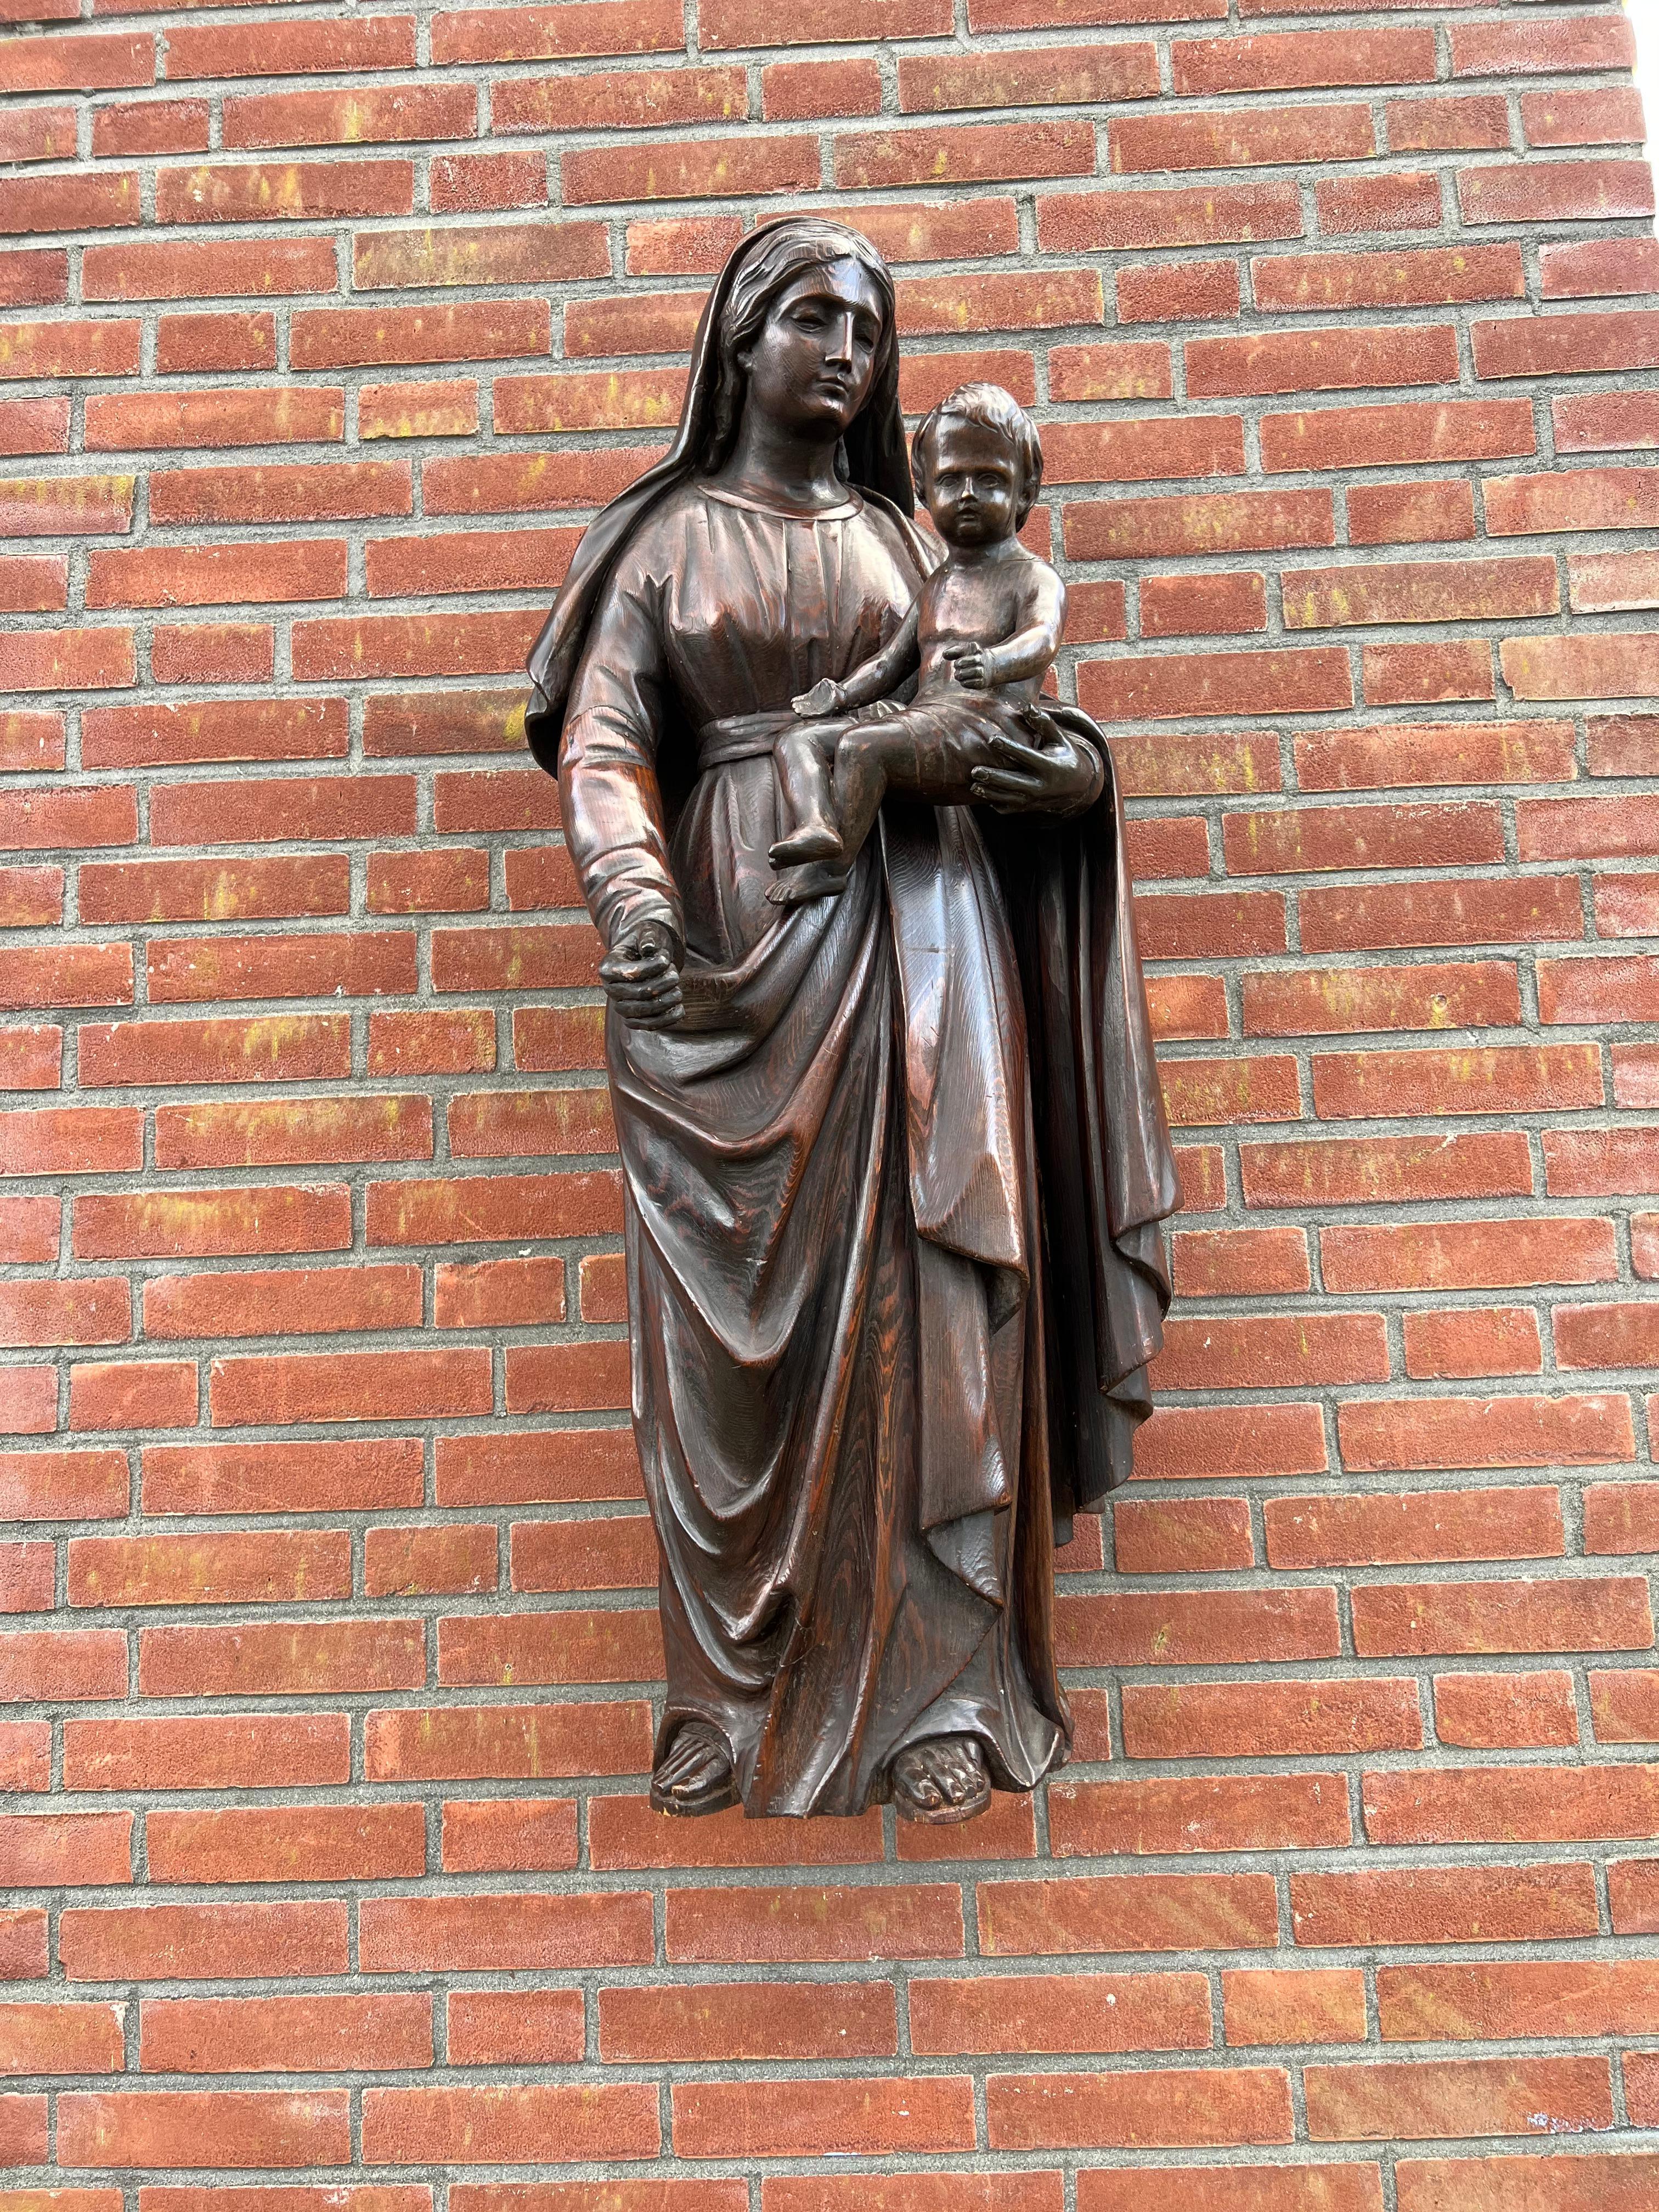 Belle sculpture en bois du début des années 1800 représentant la Sainte Marie avec l'enfant Jésus sur le bras.

Cette étonnante relique d'église est un autre bel exemple de la qualité de l'artisanat européen du 19e siècle et nous sommes